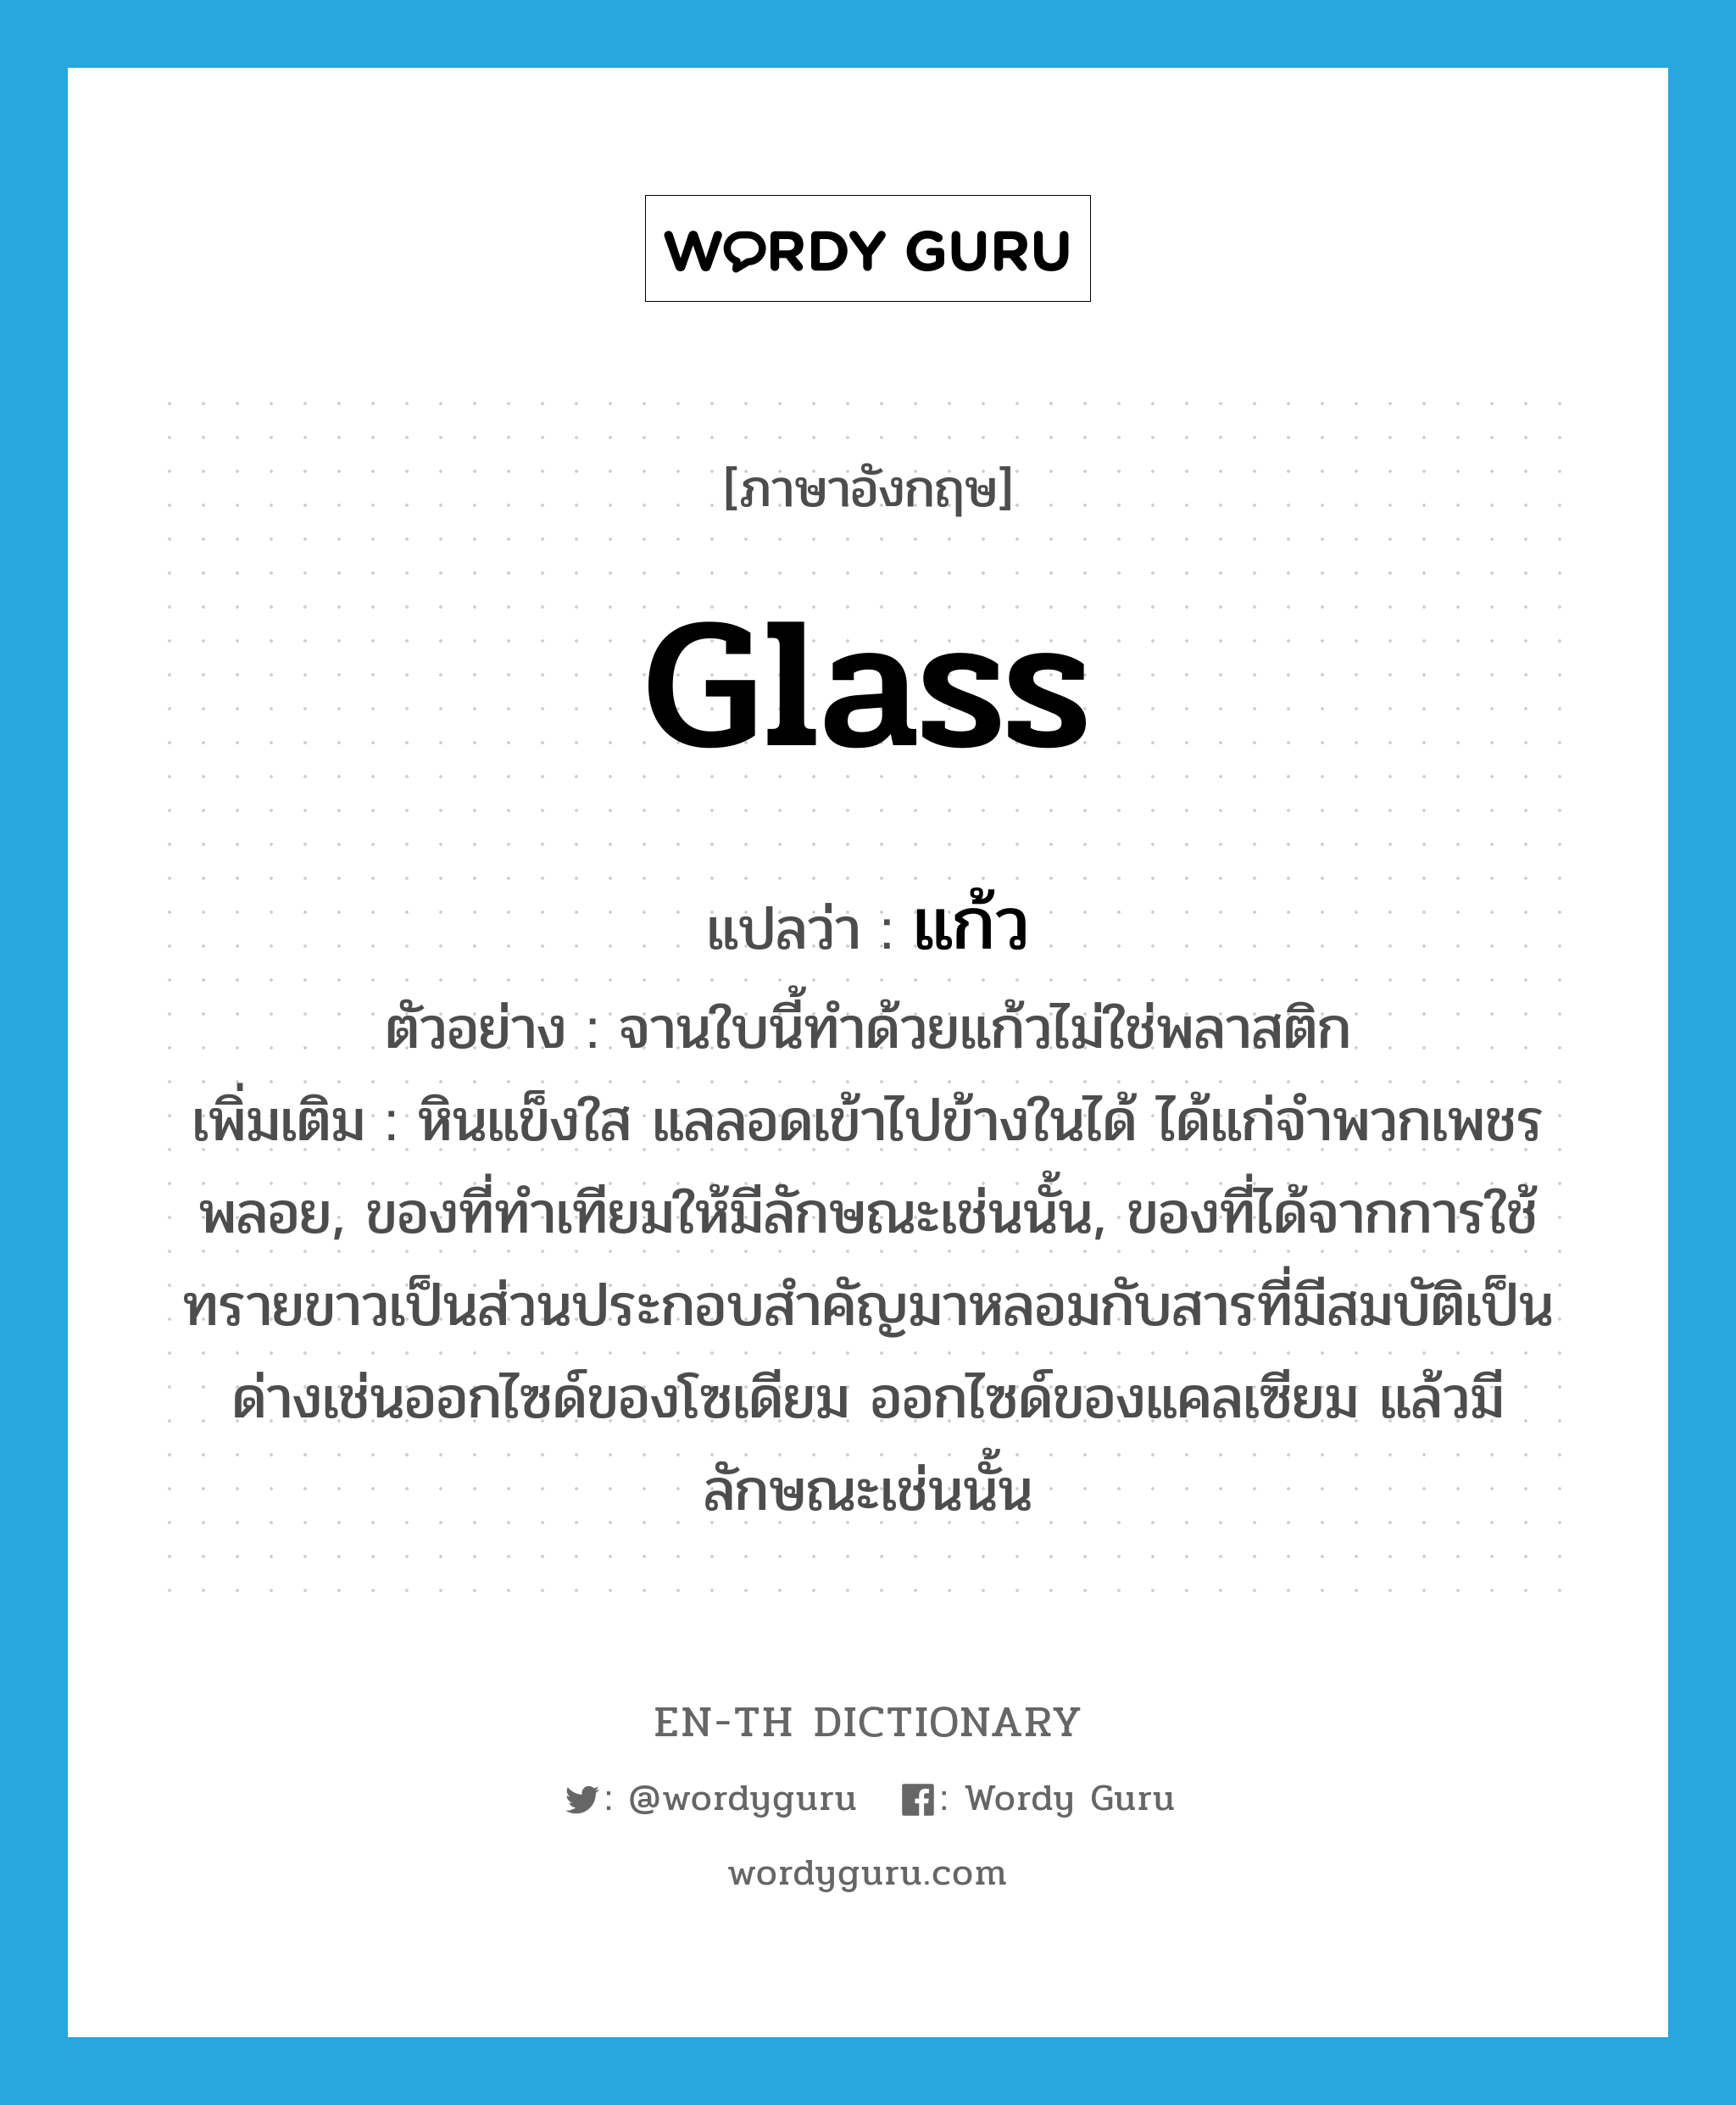 glass แปลว่า?, คำศัพท์ภาษาอังกฤษ glass แปลว่า แก้ว ประเภท N ตัวอย่าง จานใบนี้ทำด้วยแก้วไม่ใช่พลาสติก เพิ่มเติม หินแข็งใส แลลอดเข้าไปข้างในได้ ได้แก่จำพวกเพชรพลอย, ของที่ทำเทียมให้มีลักษณะเช่นนั้น, ของที่ได้จากการใช้ทรายขาวเป็นส่วนประกอบสำคัญมาหลอมกับสารที่มีสมบัติเป็นด่างเช่นออกไซด์ของโซเดียม ออกไซด์ของแคลเซียม แล้วมีลักษณะเช่นนั้น หมวด N